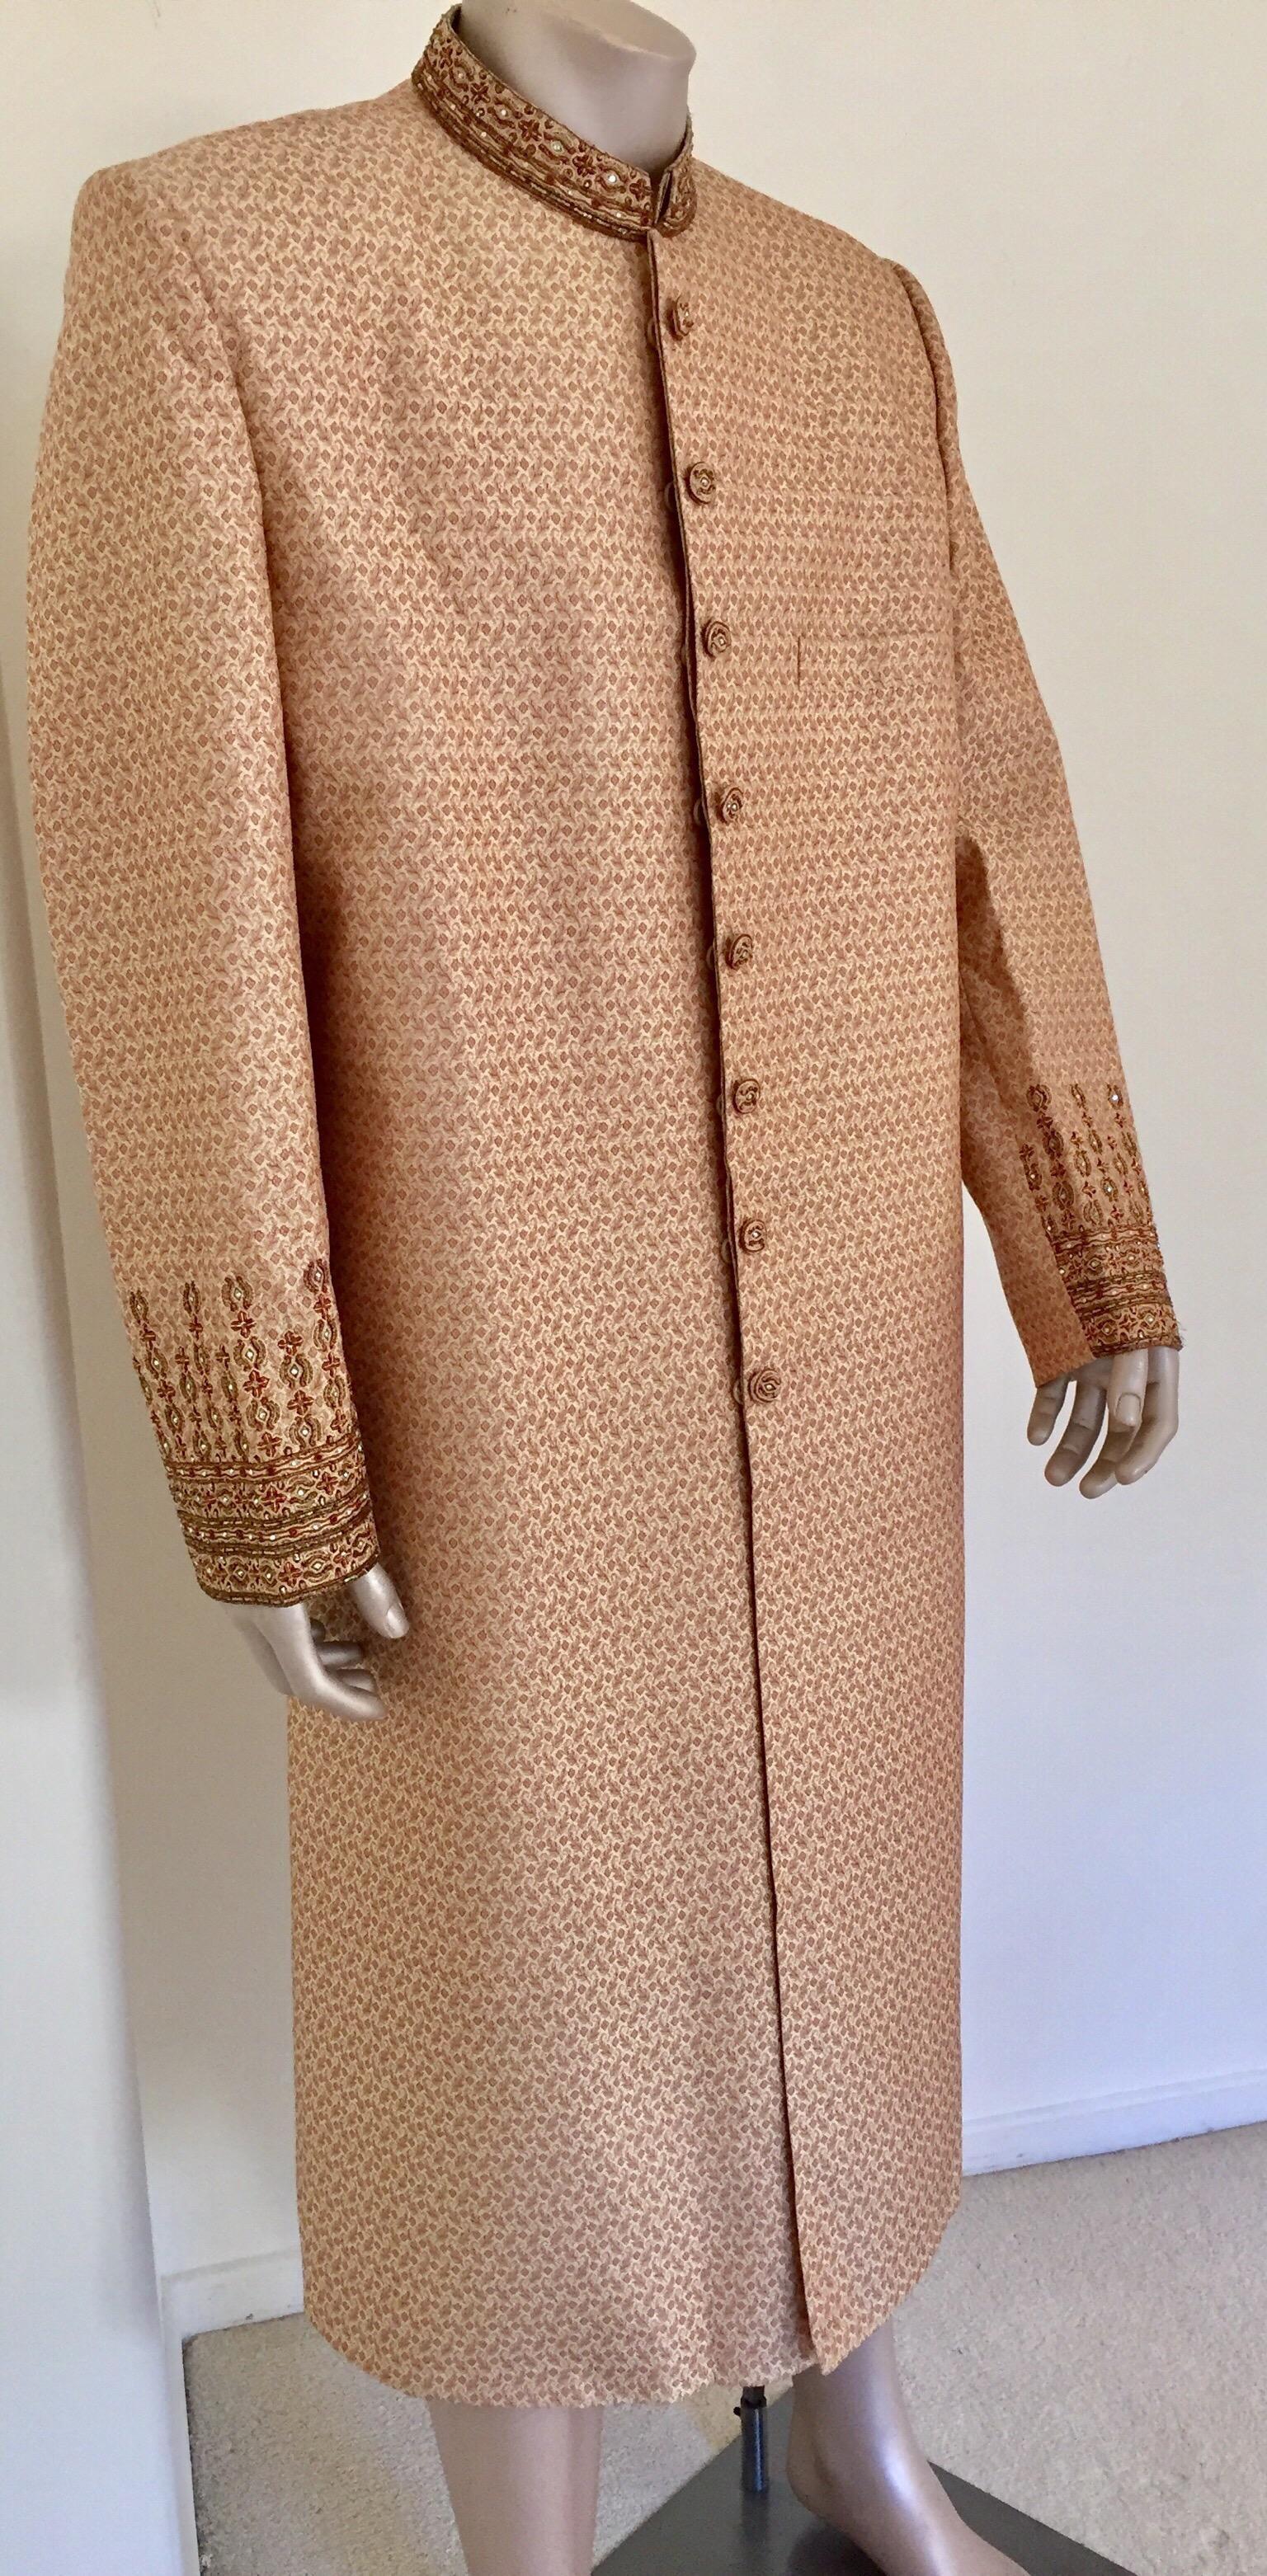 sultan coat